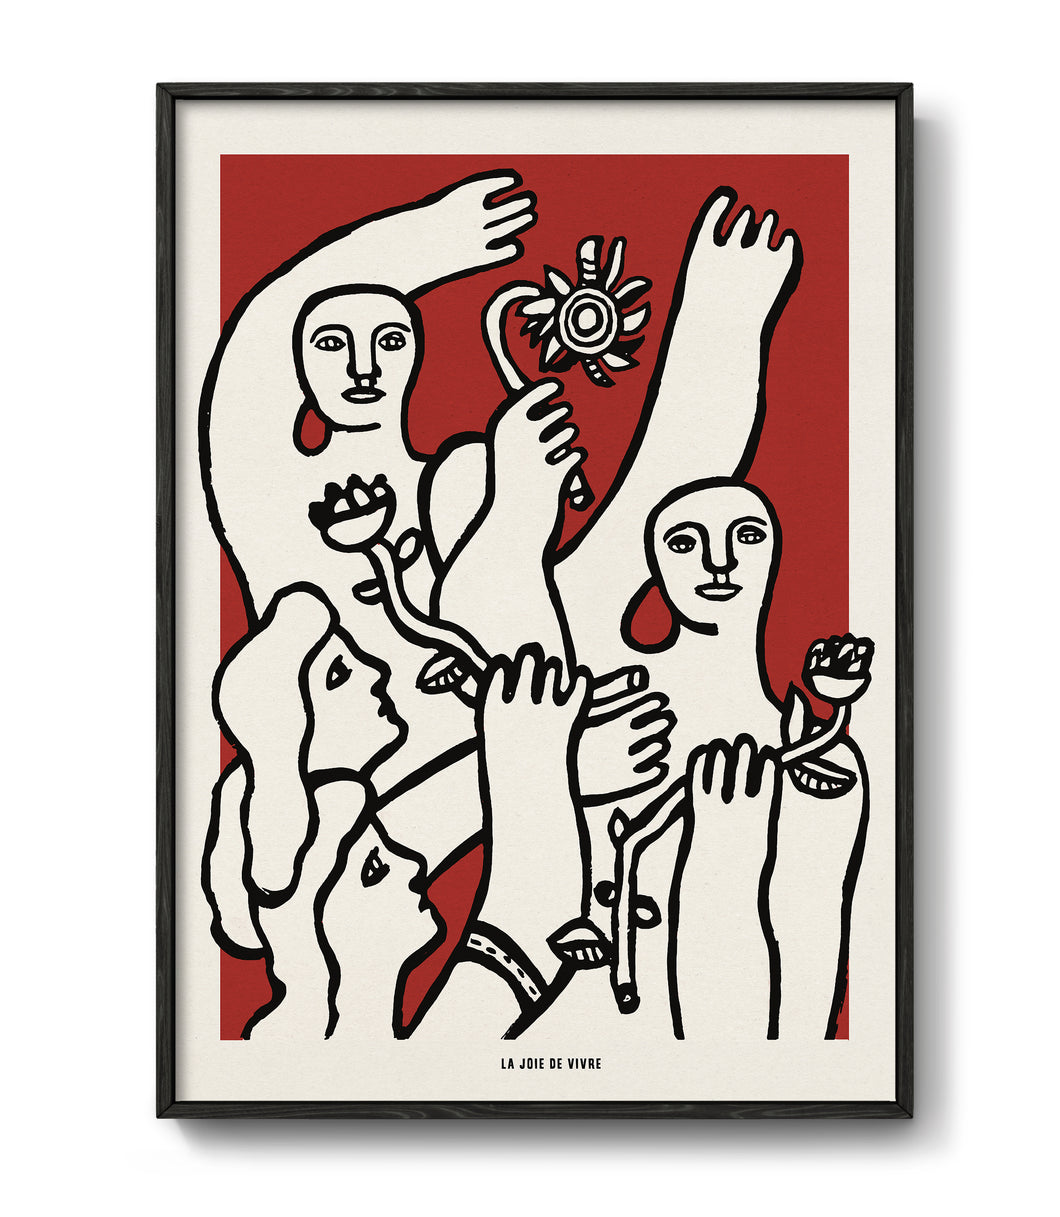 La Joie de vivre by Fernand Léger